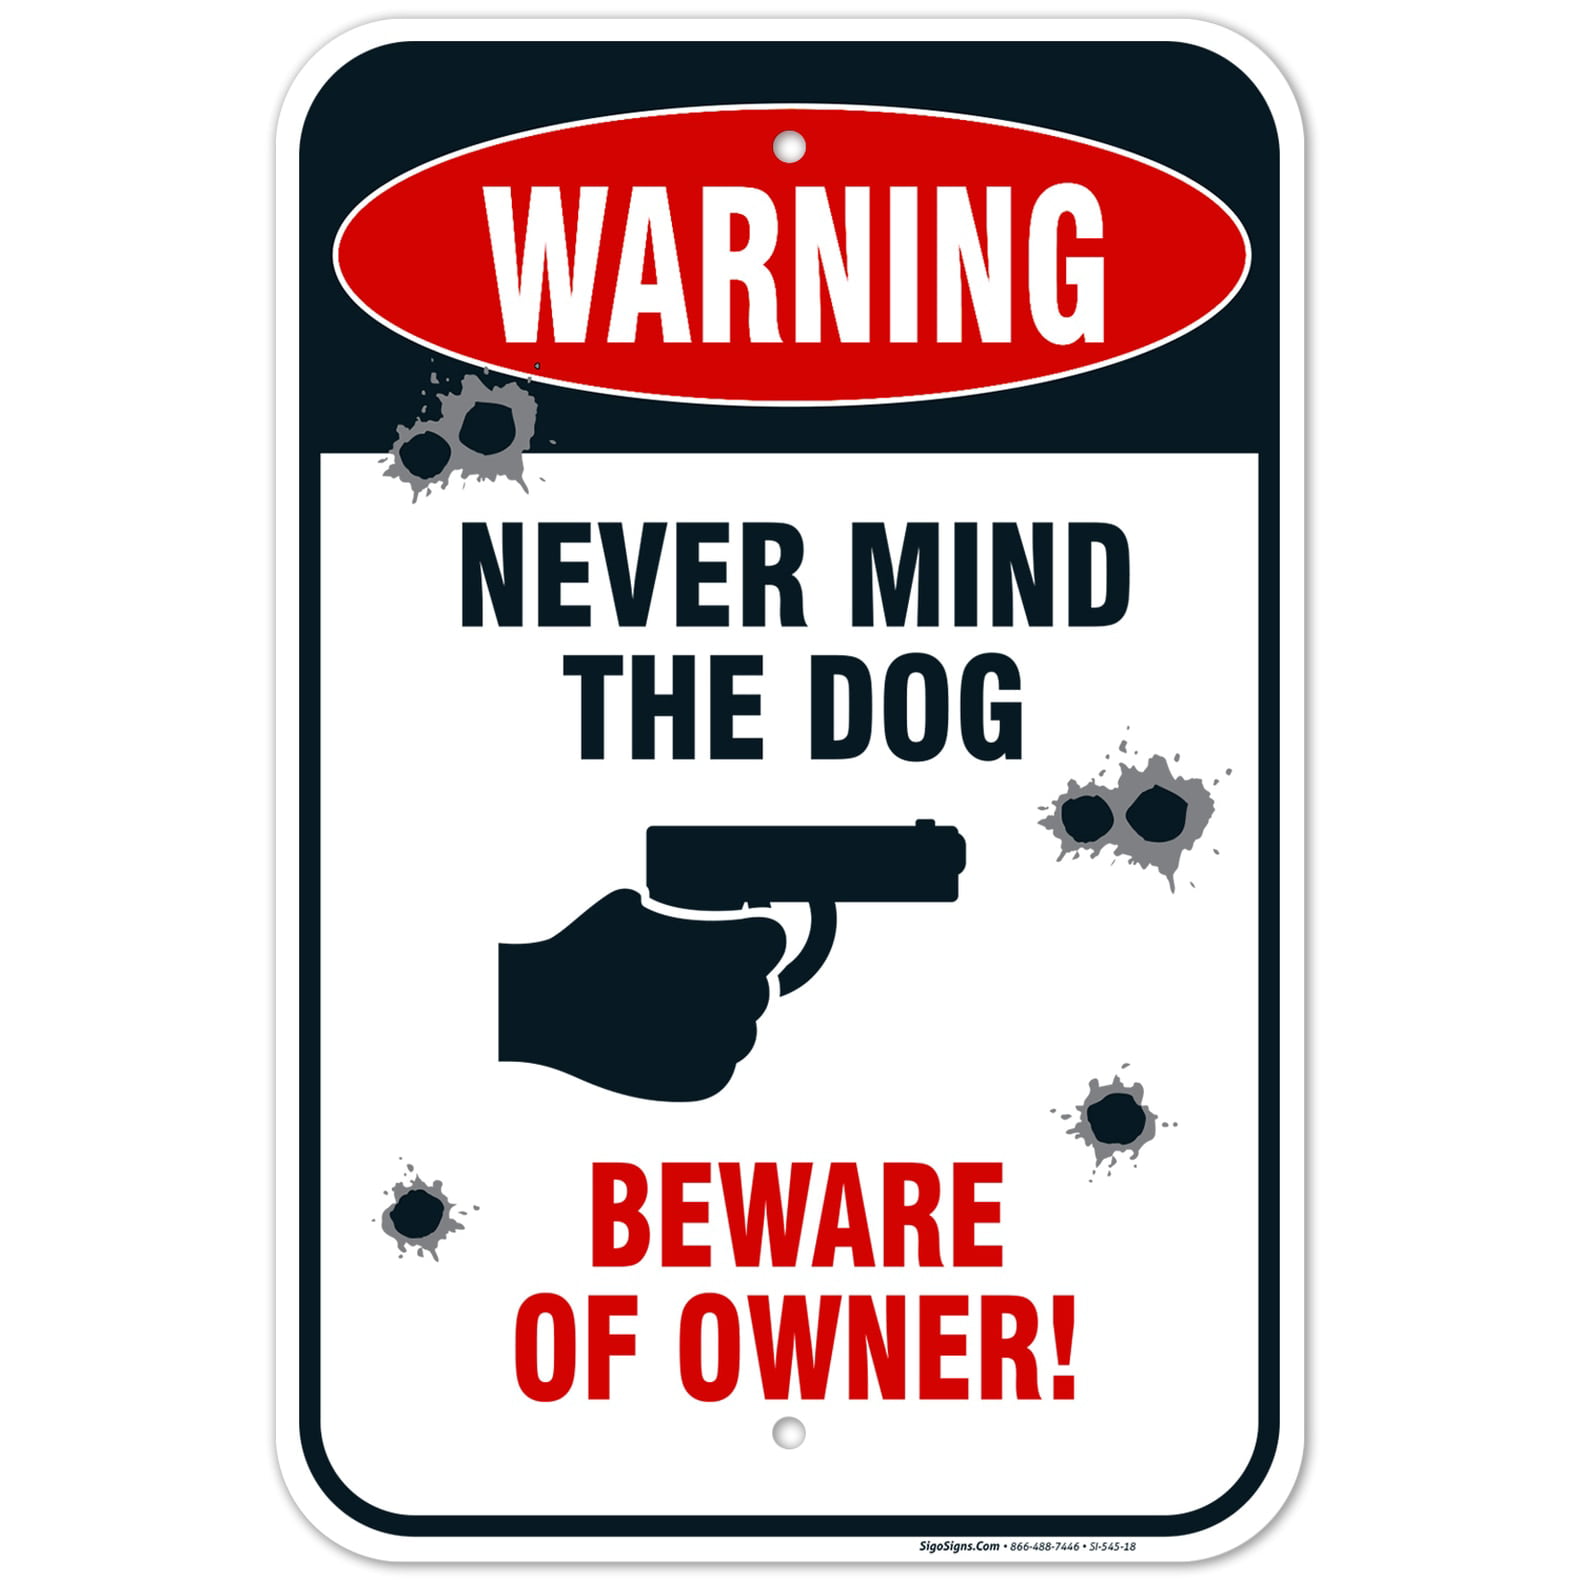 Warning - Never Mind the Dog - Beware of Owner Sign - Walmart.com - Walmart.com